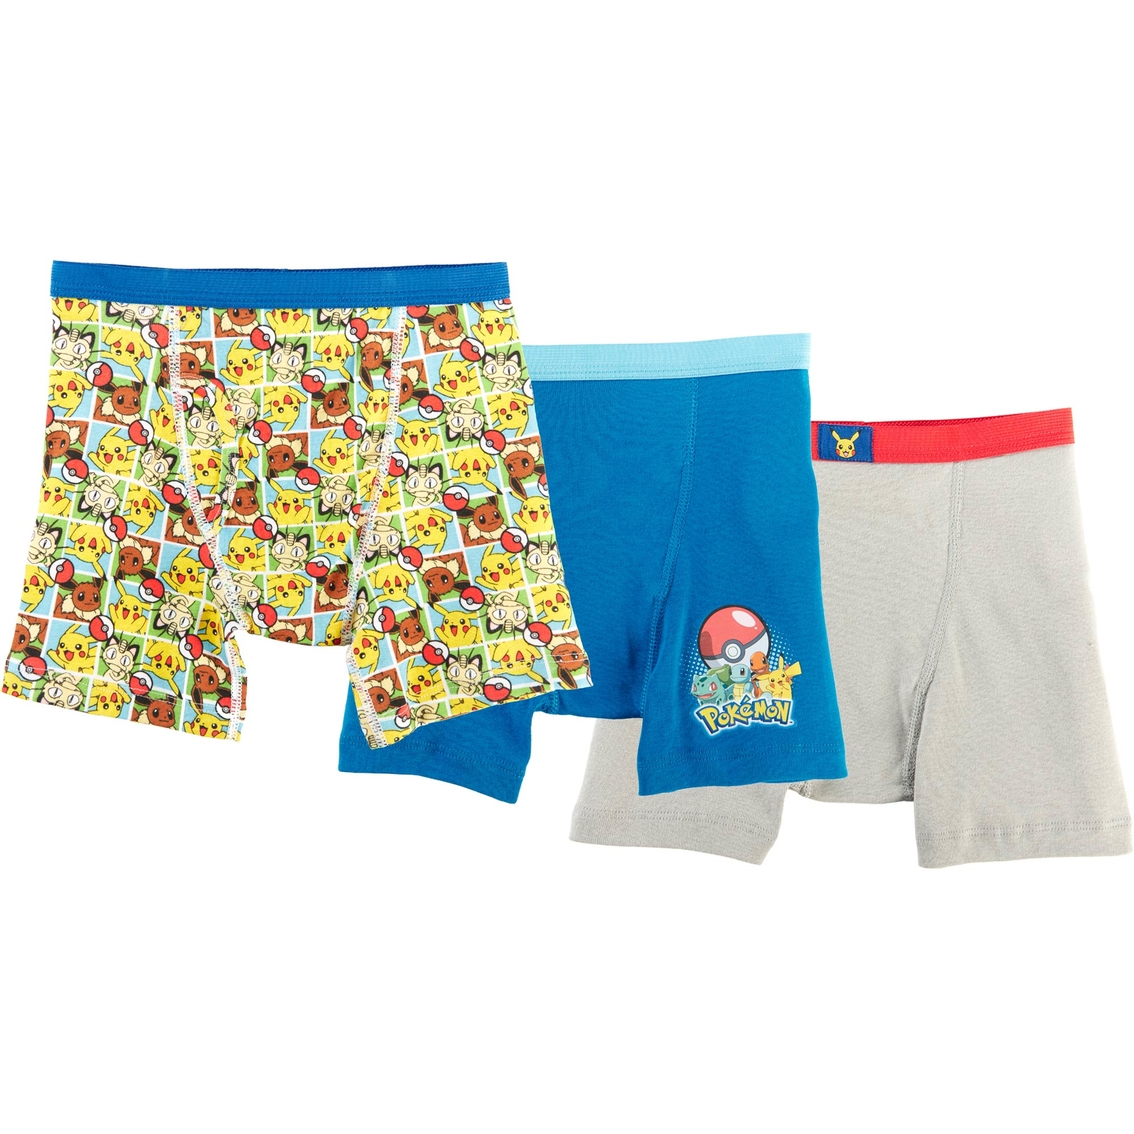 Pokemon Boys Boxer Briefs 3 Pk., Size 8 | Boys 8-20 | Clothing ...